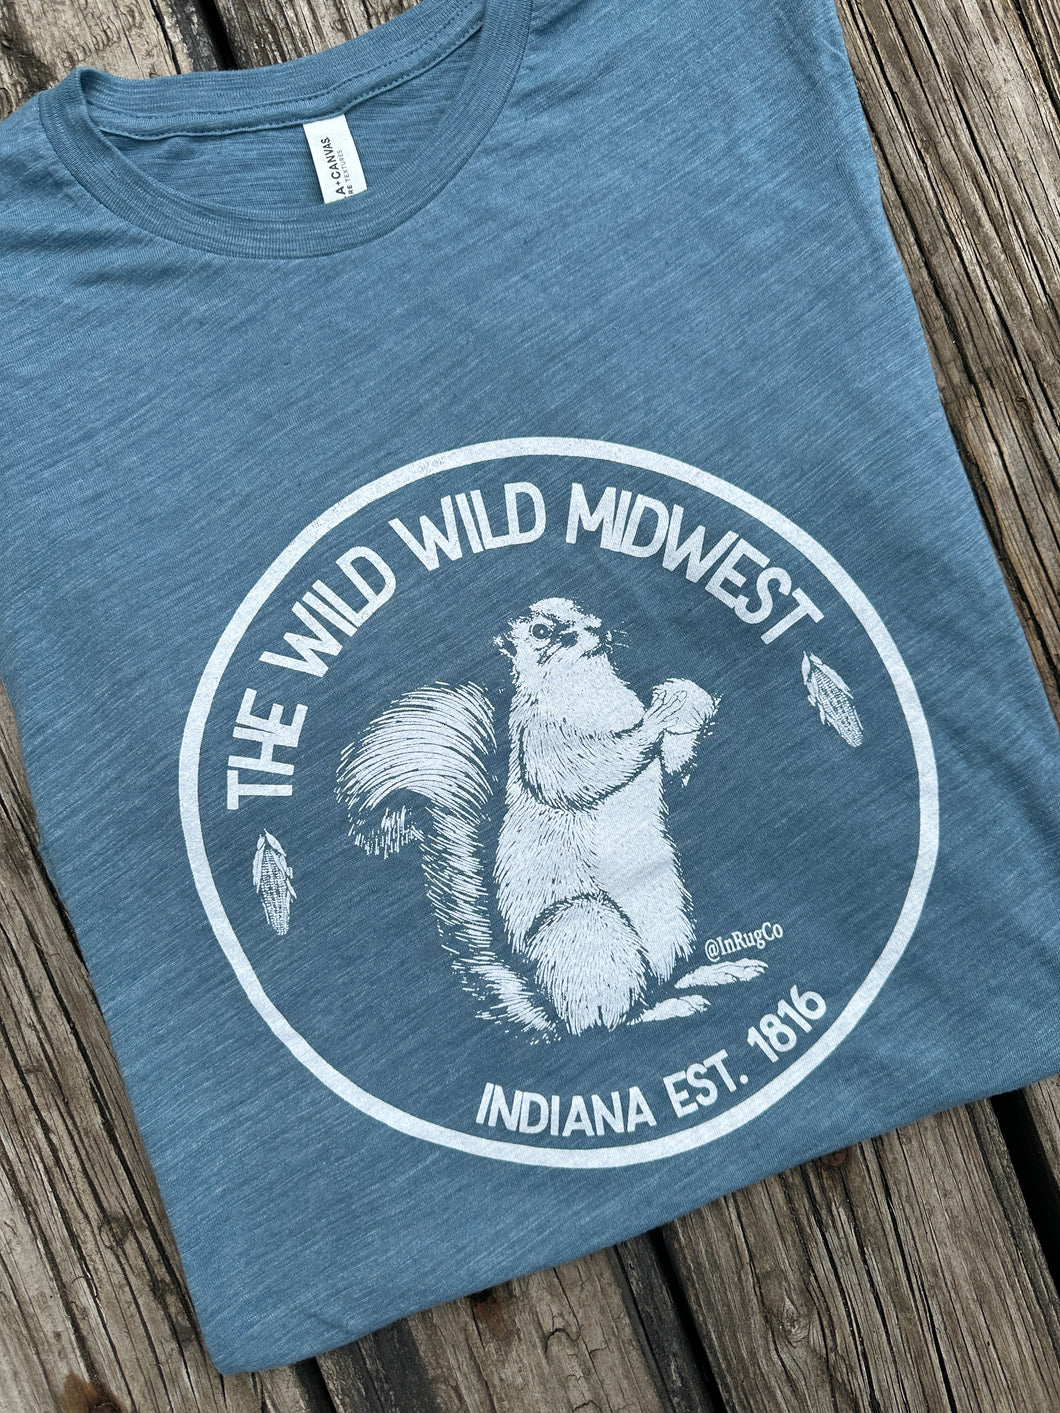 wild wild midwest shirt inrugco